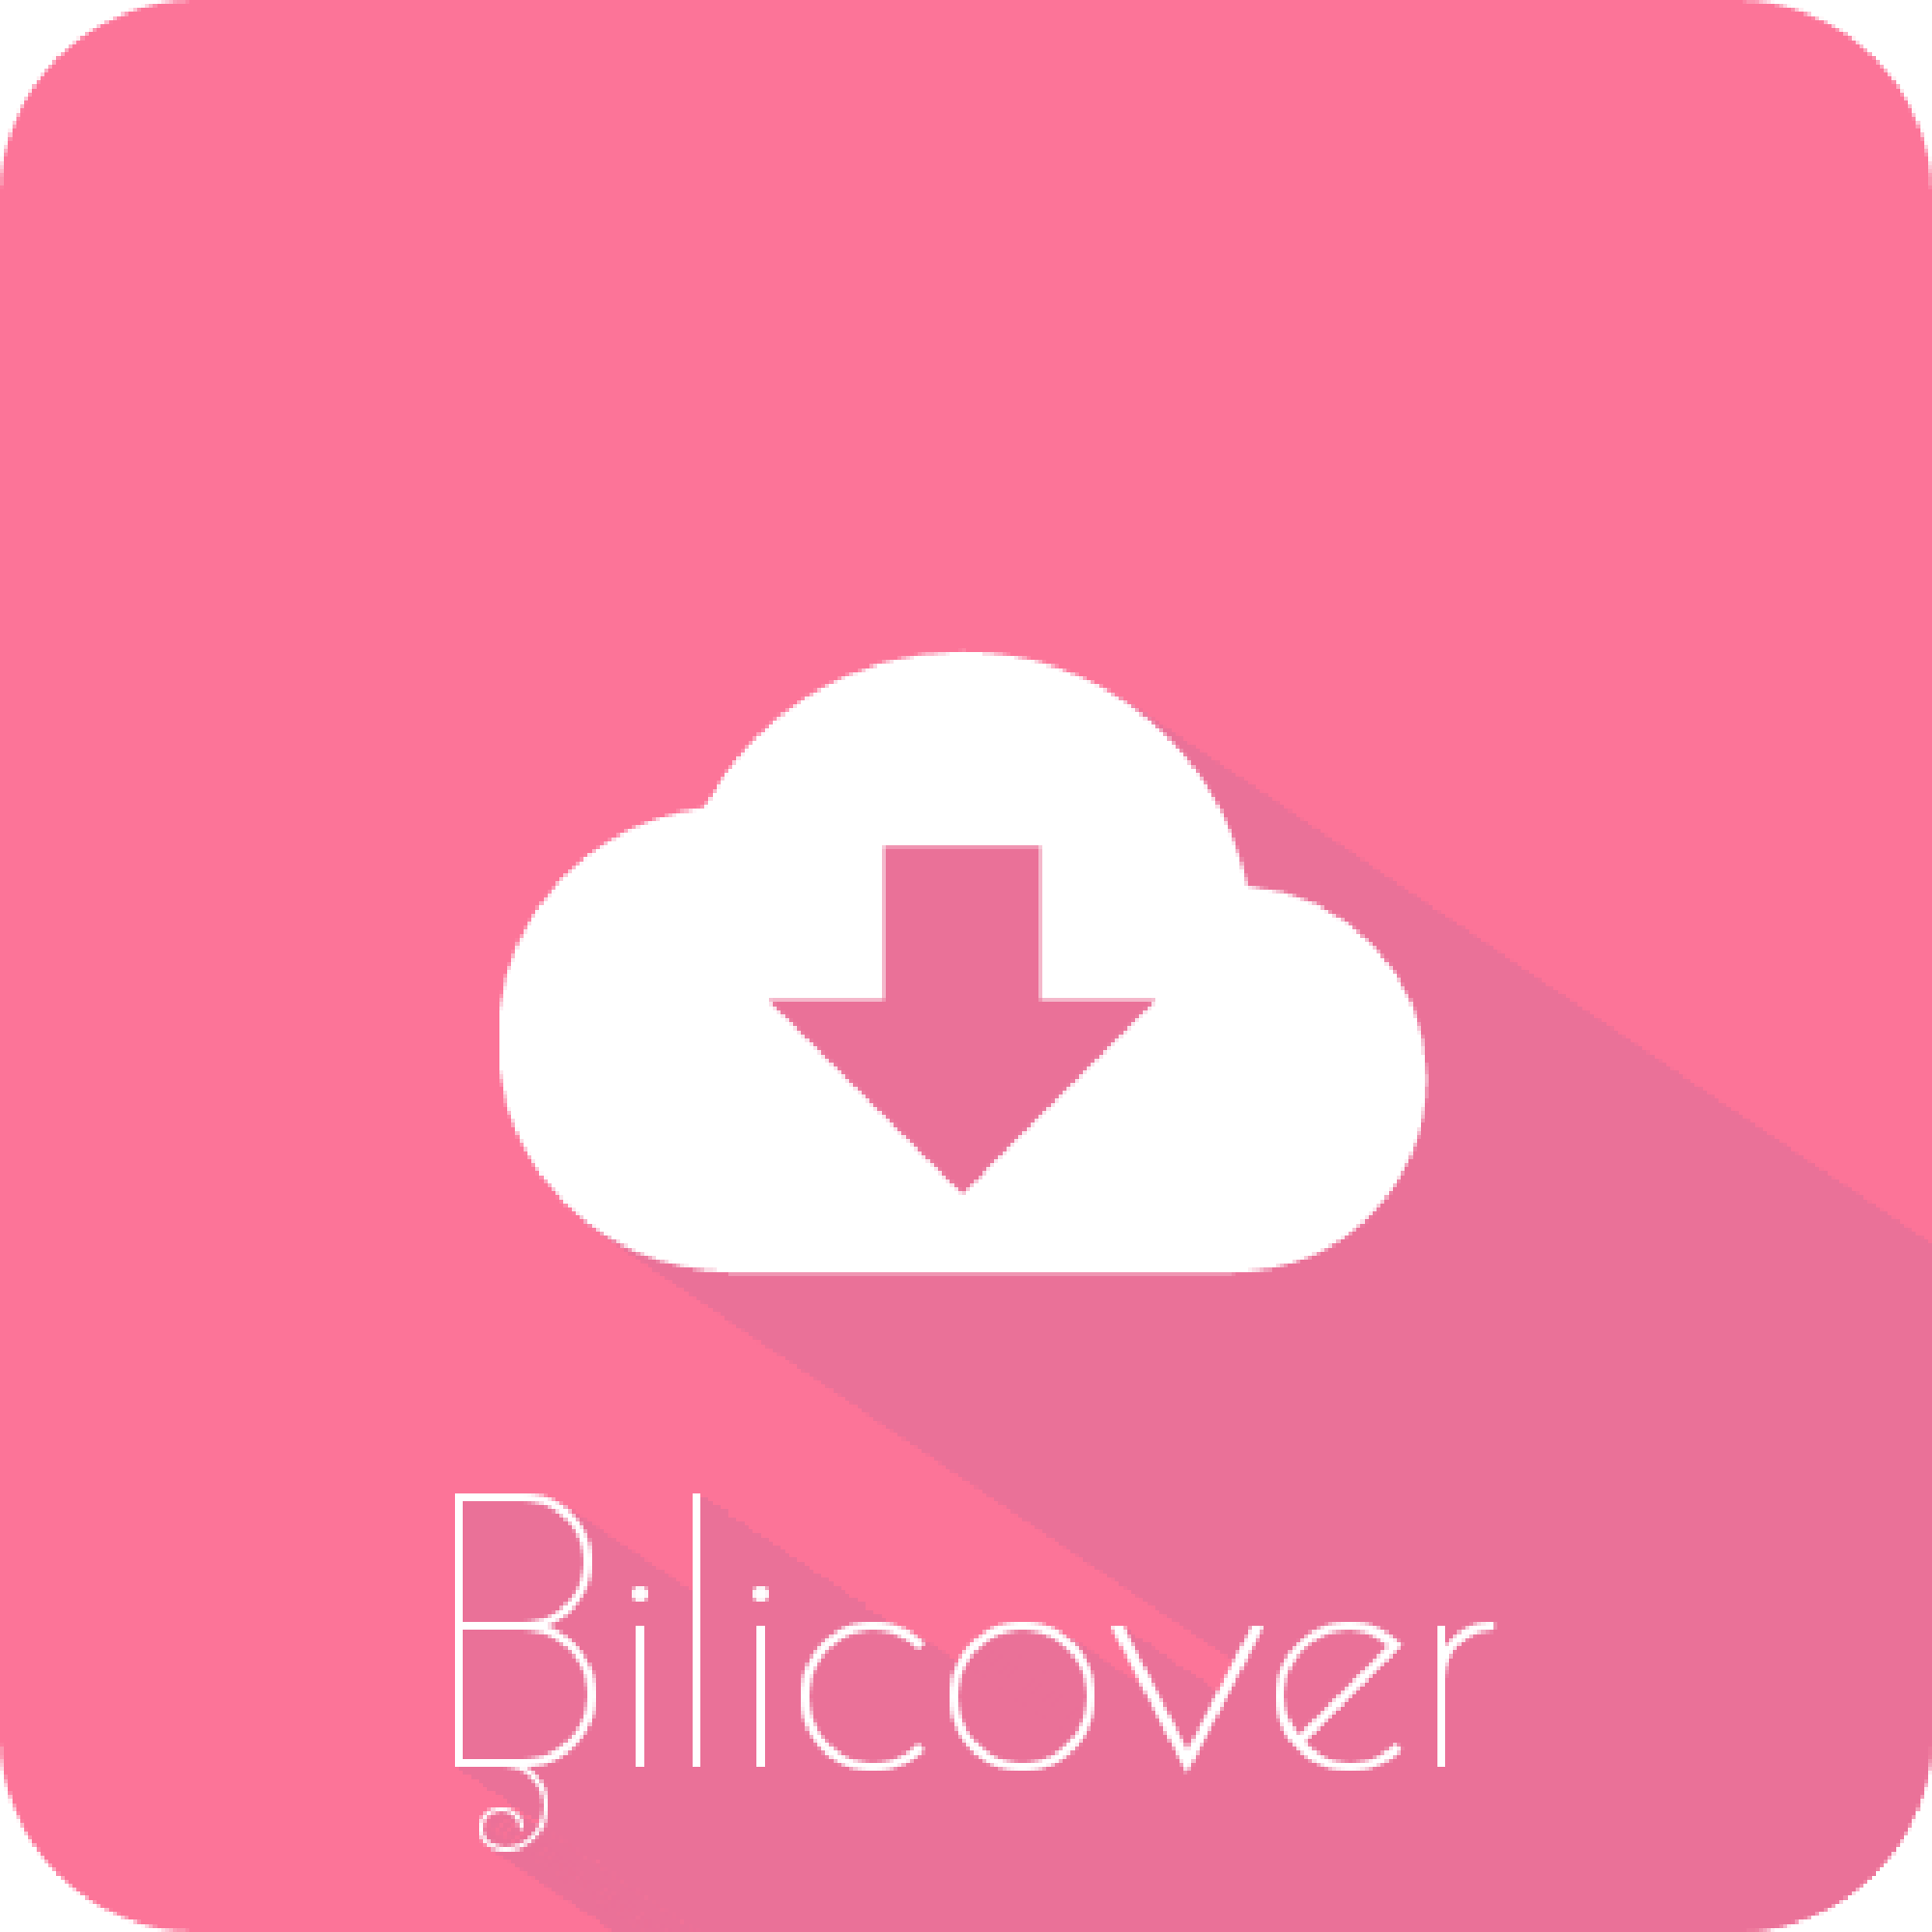 Bilicover哔哩哔哩视频封面图保存软件